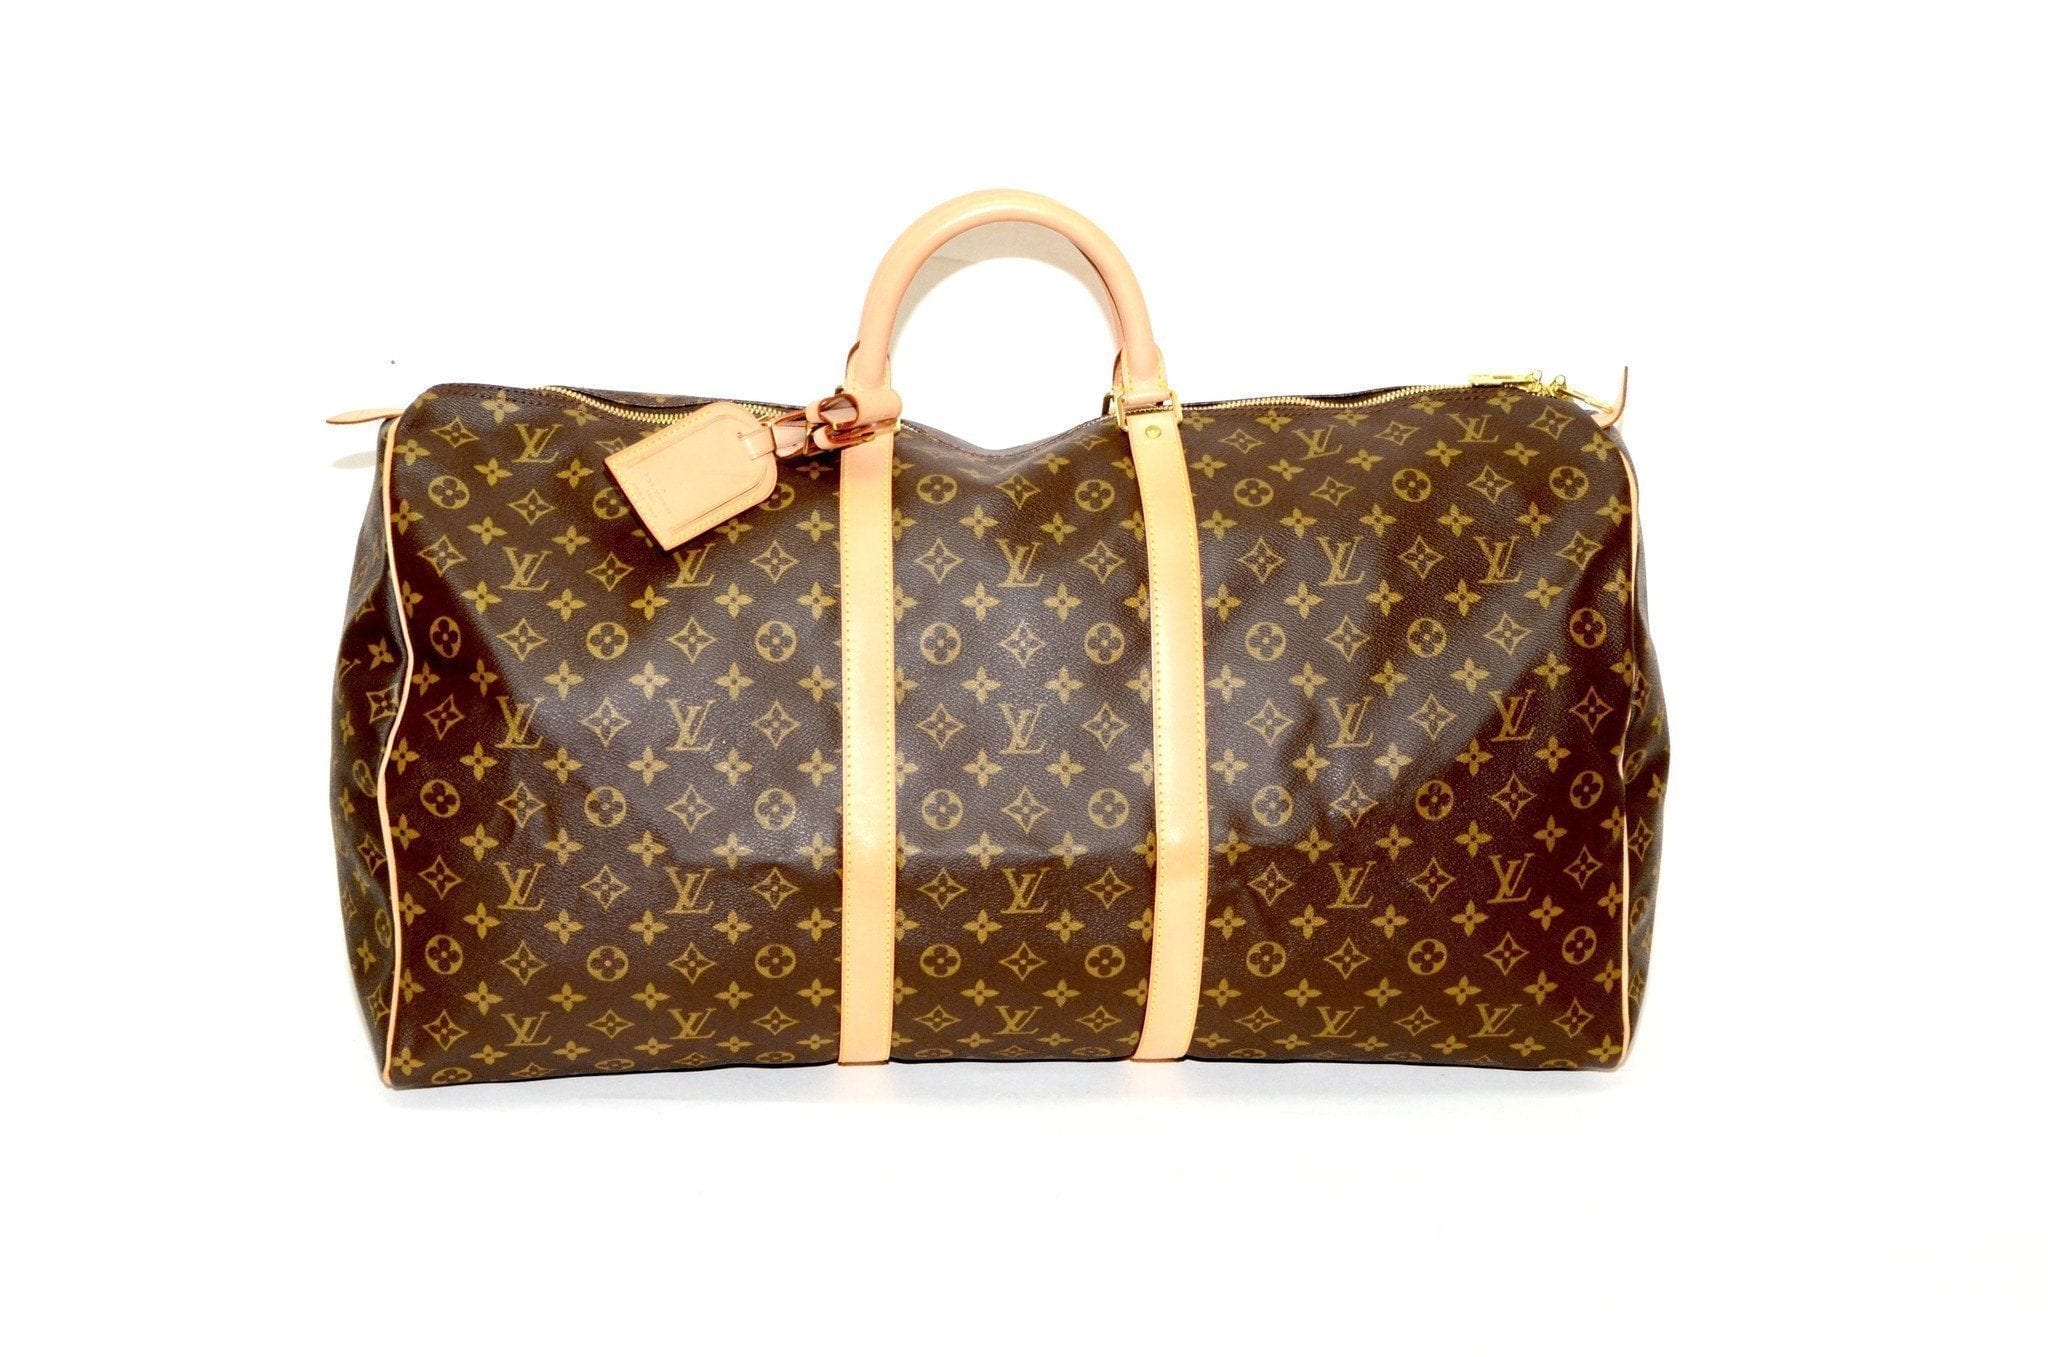 Authentic Vintage Louis Vuitton 60cm Keepall Bag